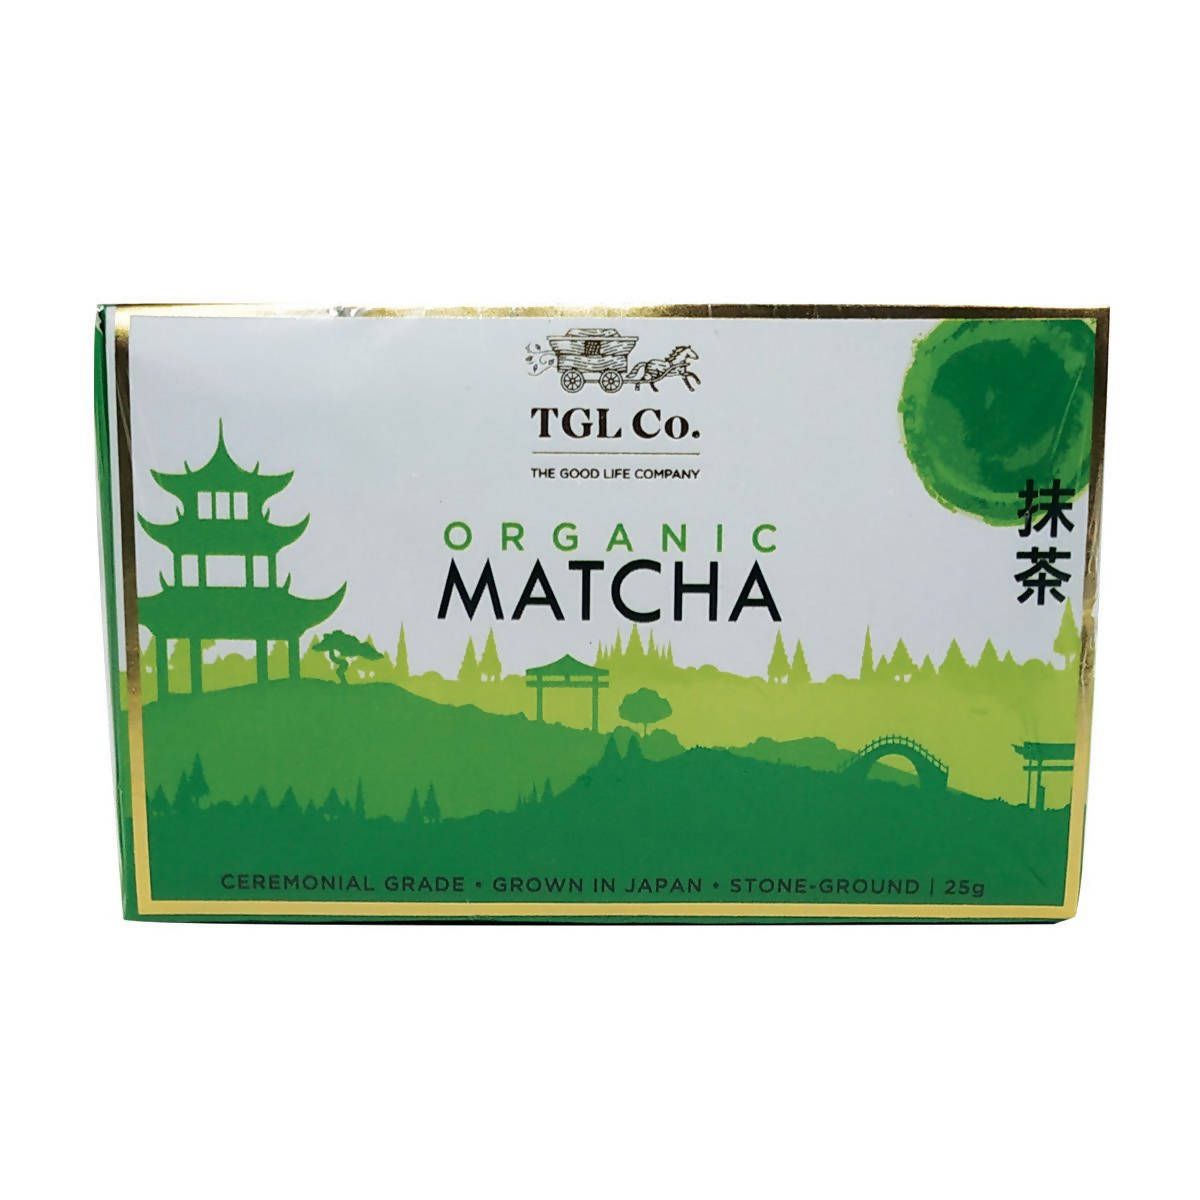 TGL Co. Organic Matcha